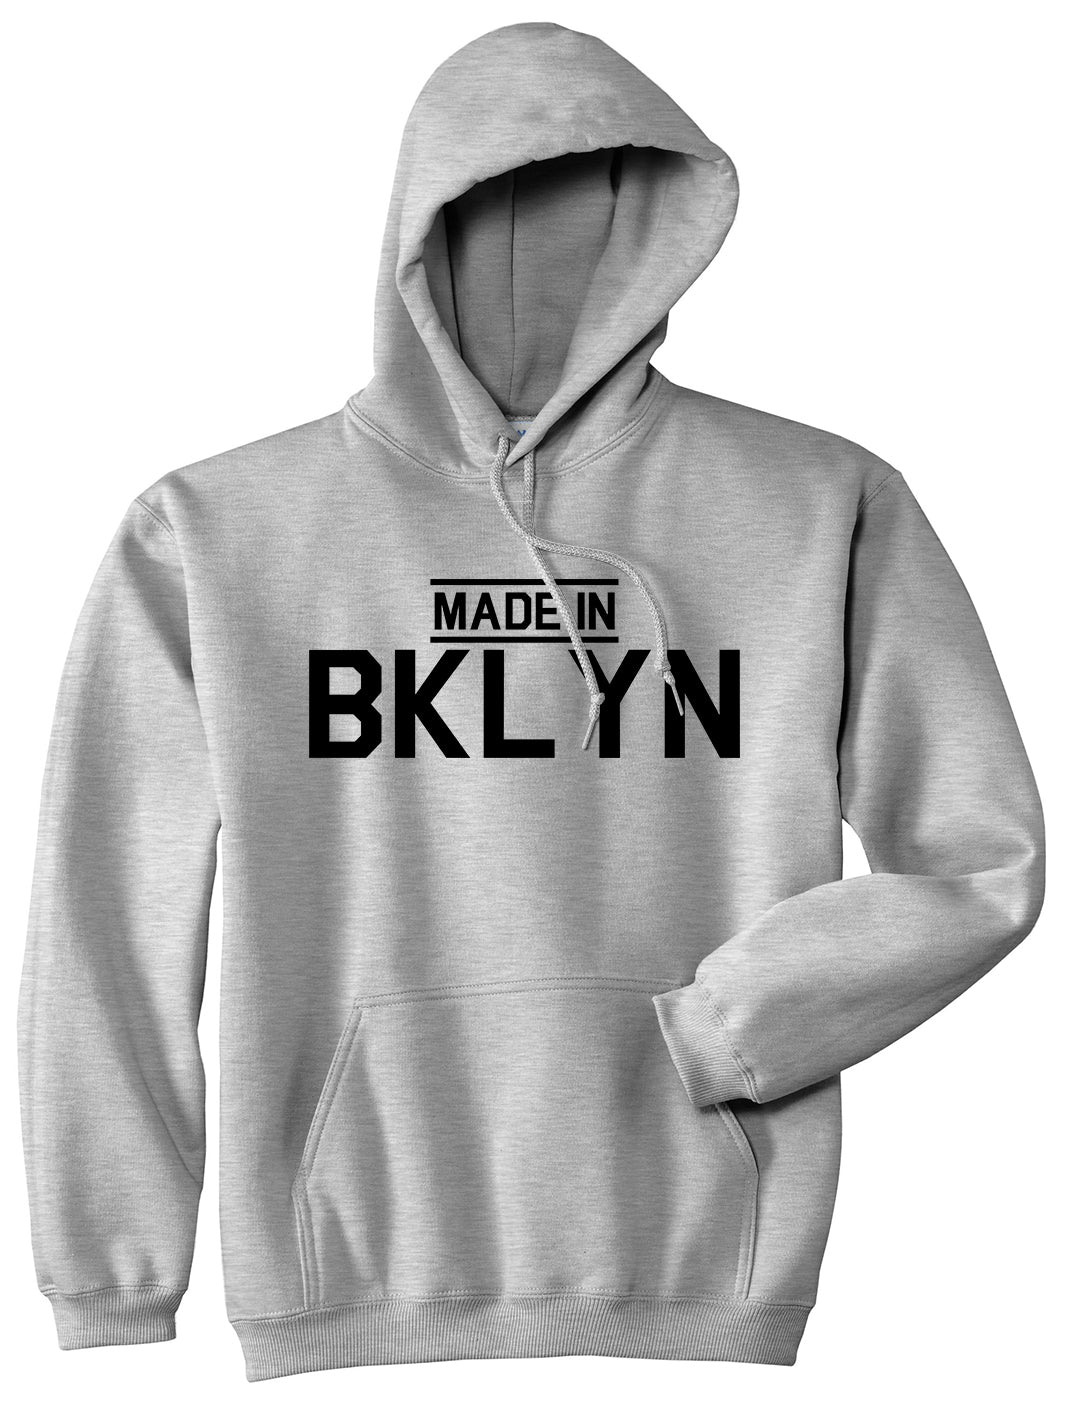 Made In BKLYN Brooklyn Mens Pullover Hoodie Grey